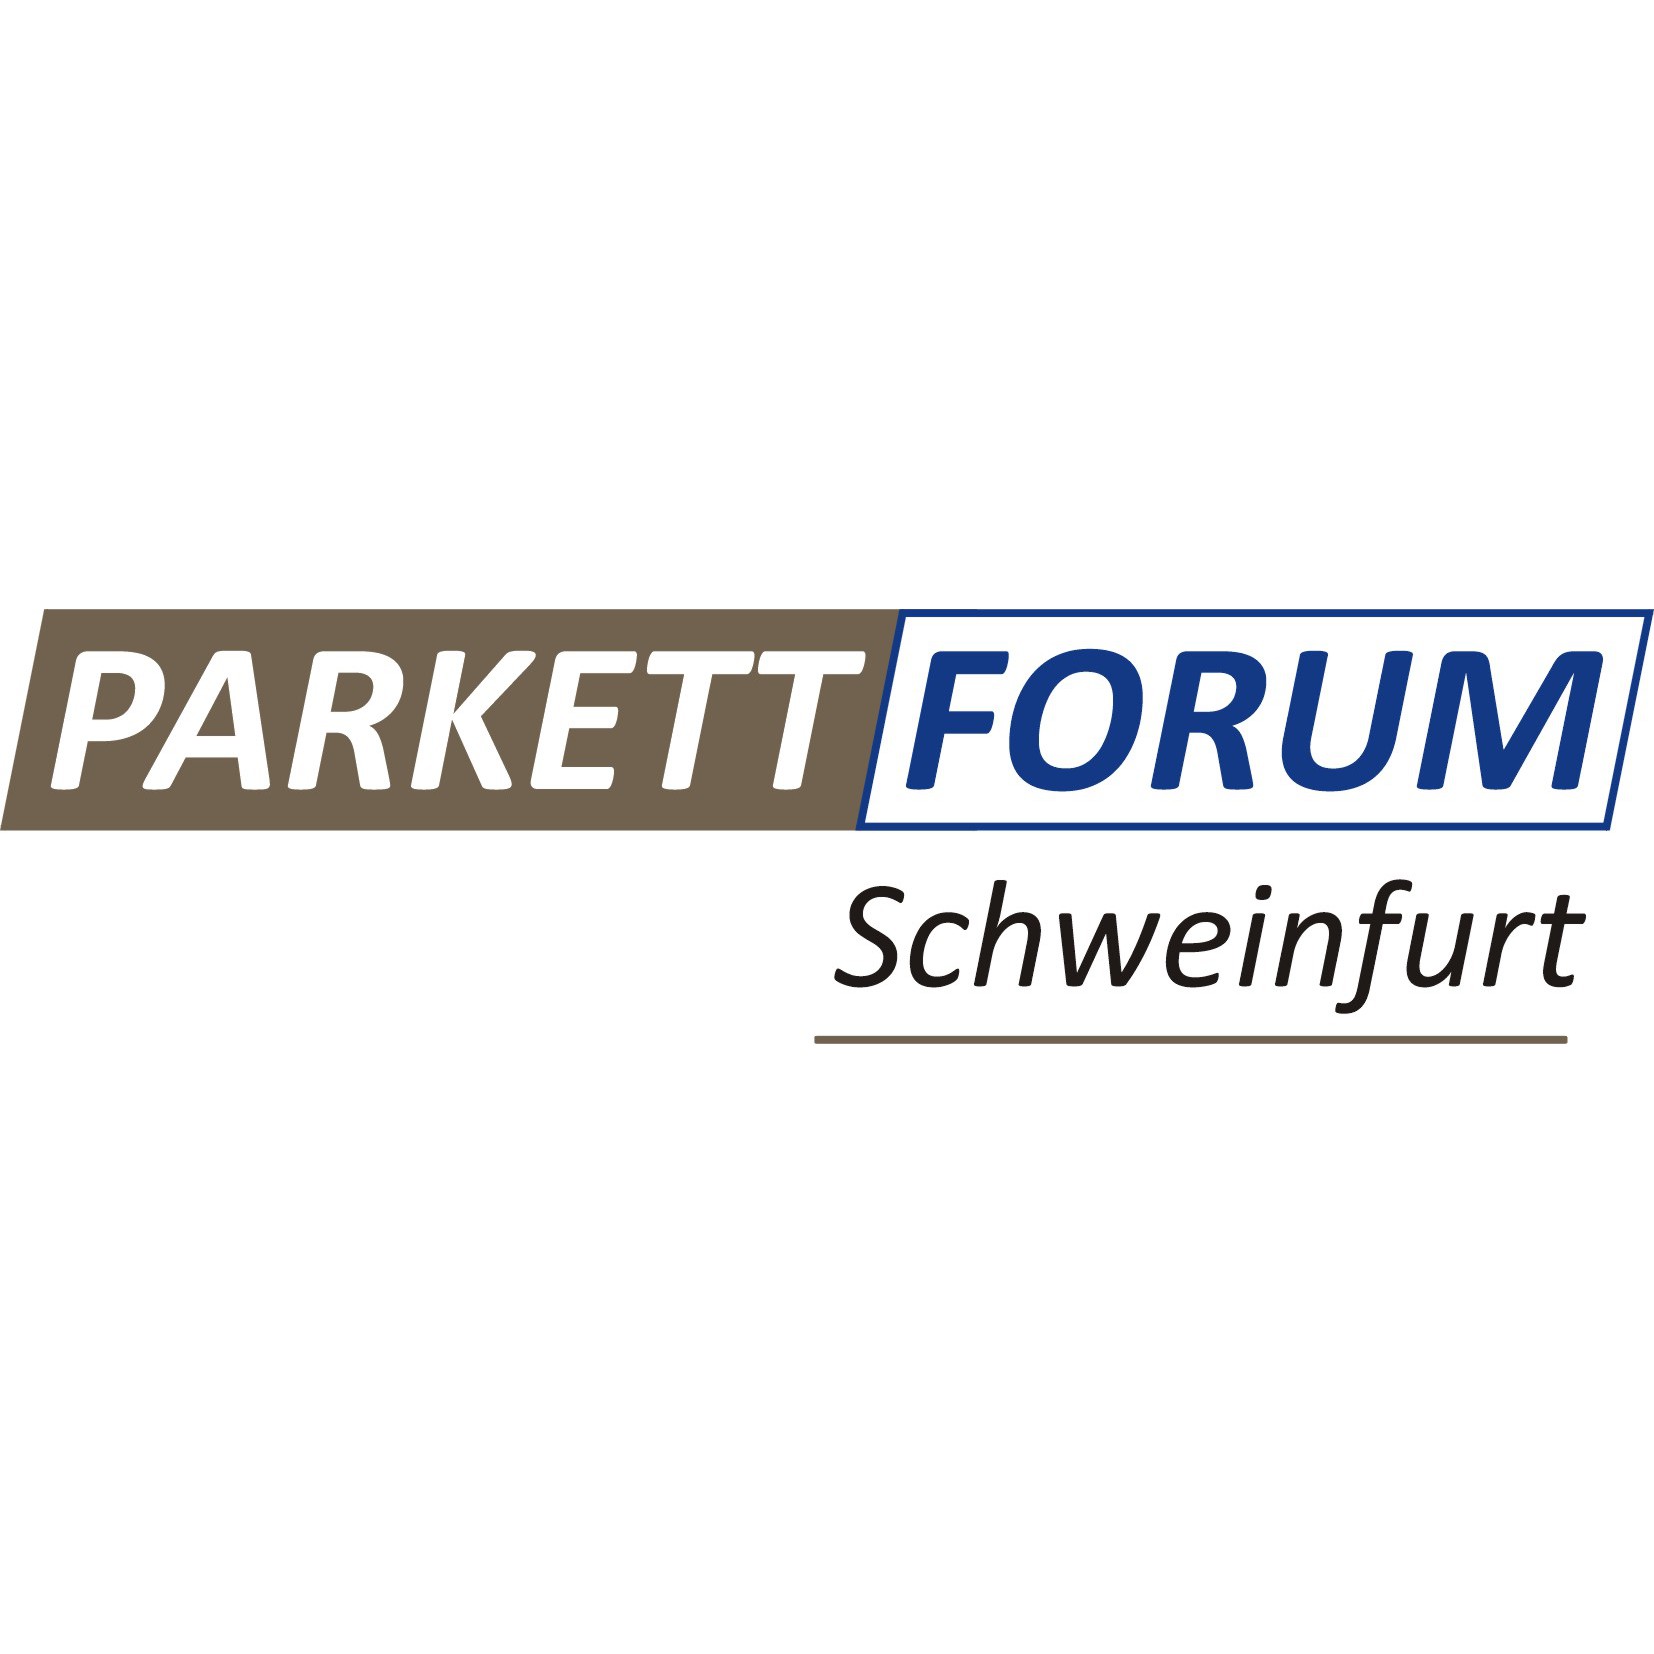 Logo Parkett-Forum Schweinfurt GmbH & Co. KG